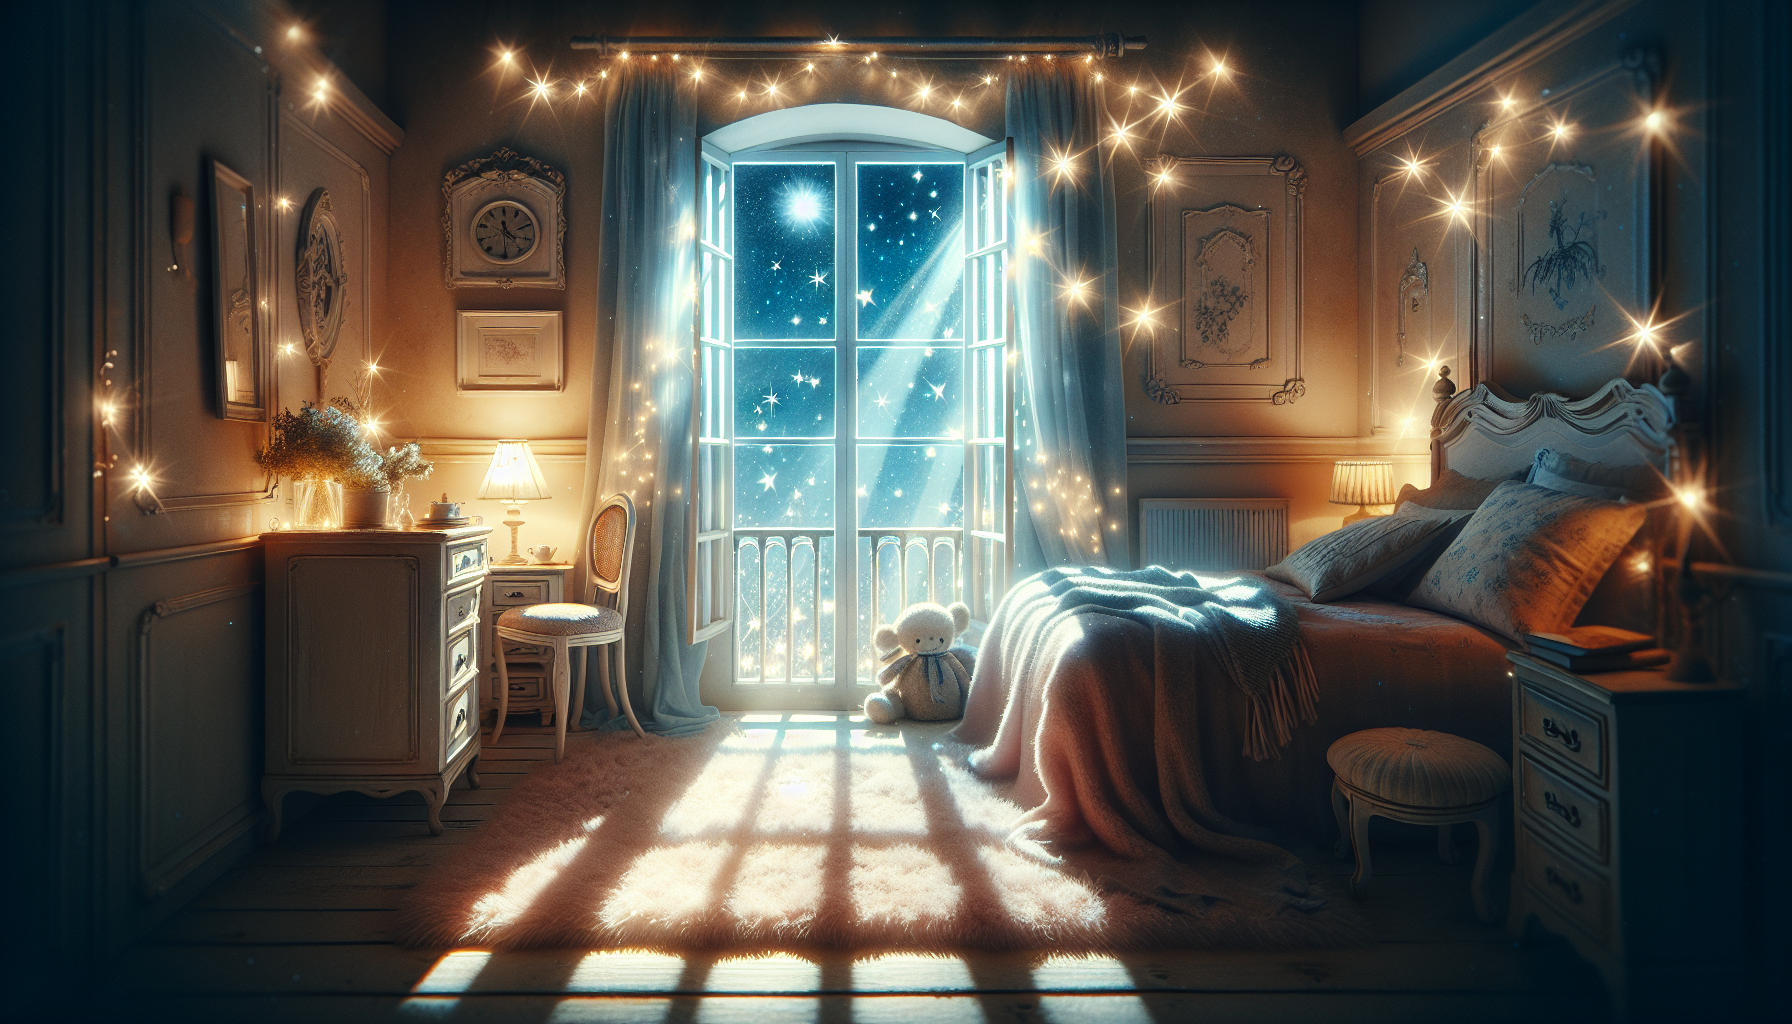 Romantische Atmosphäre unter dem Sternenhimmel durch Dachfenster im Schlafzimmer